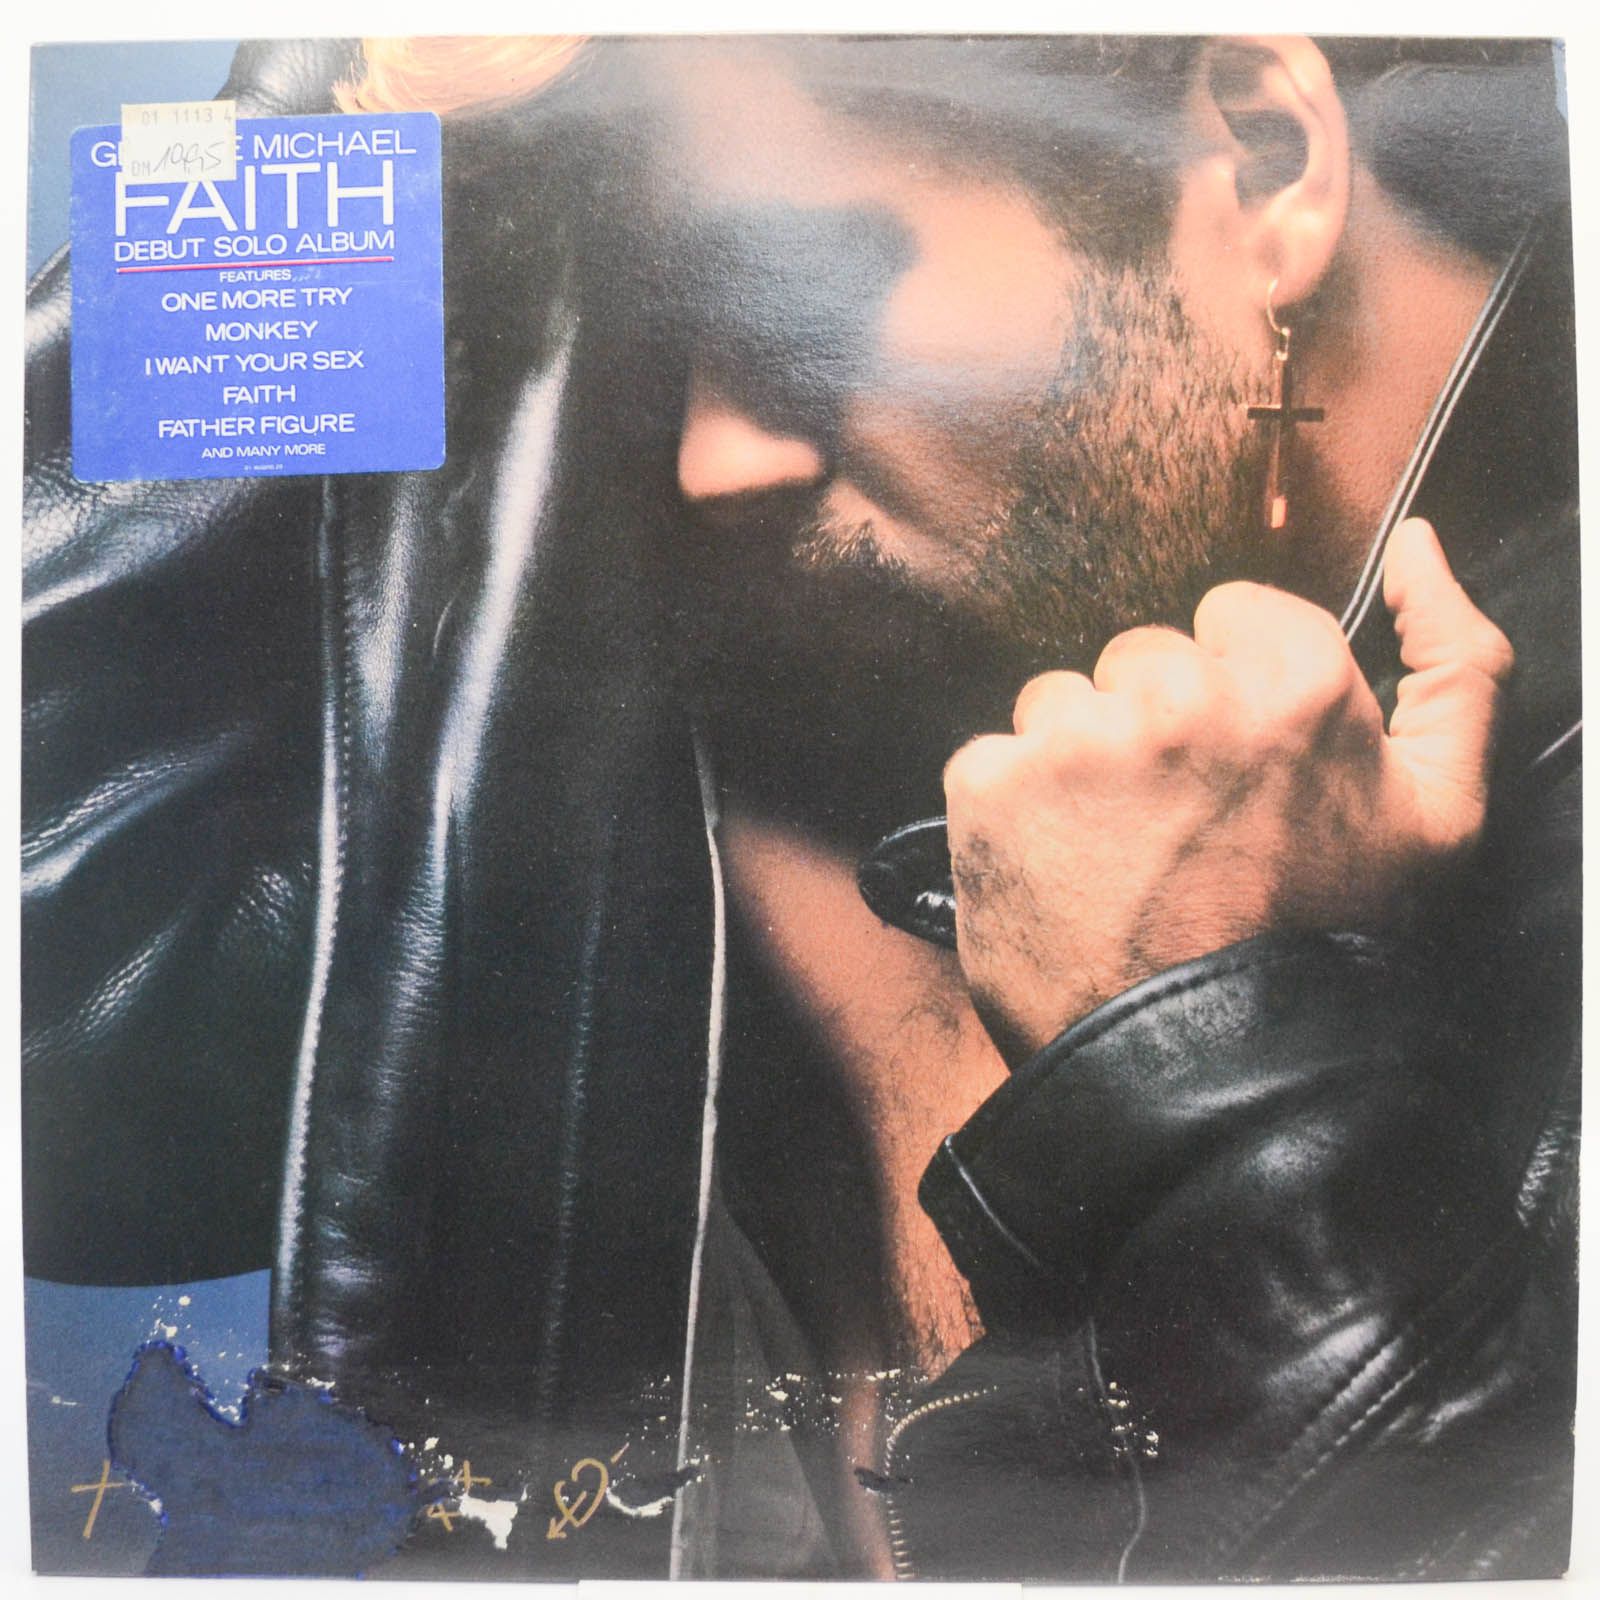 George Michael — Faith, 1987